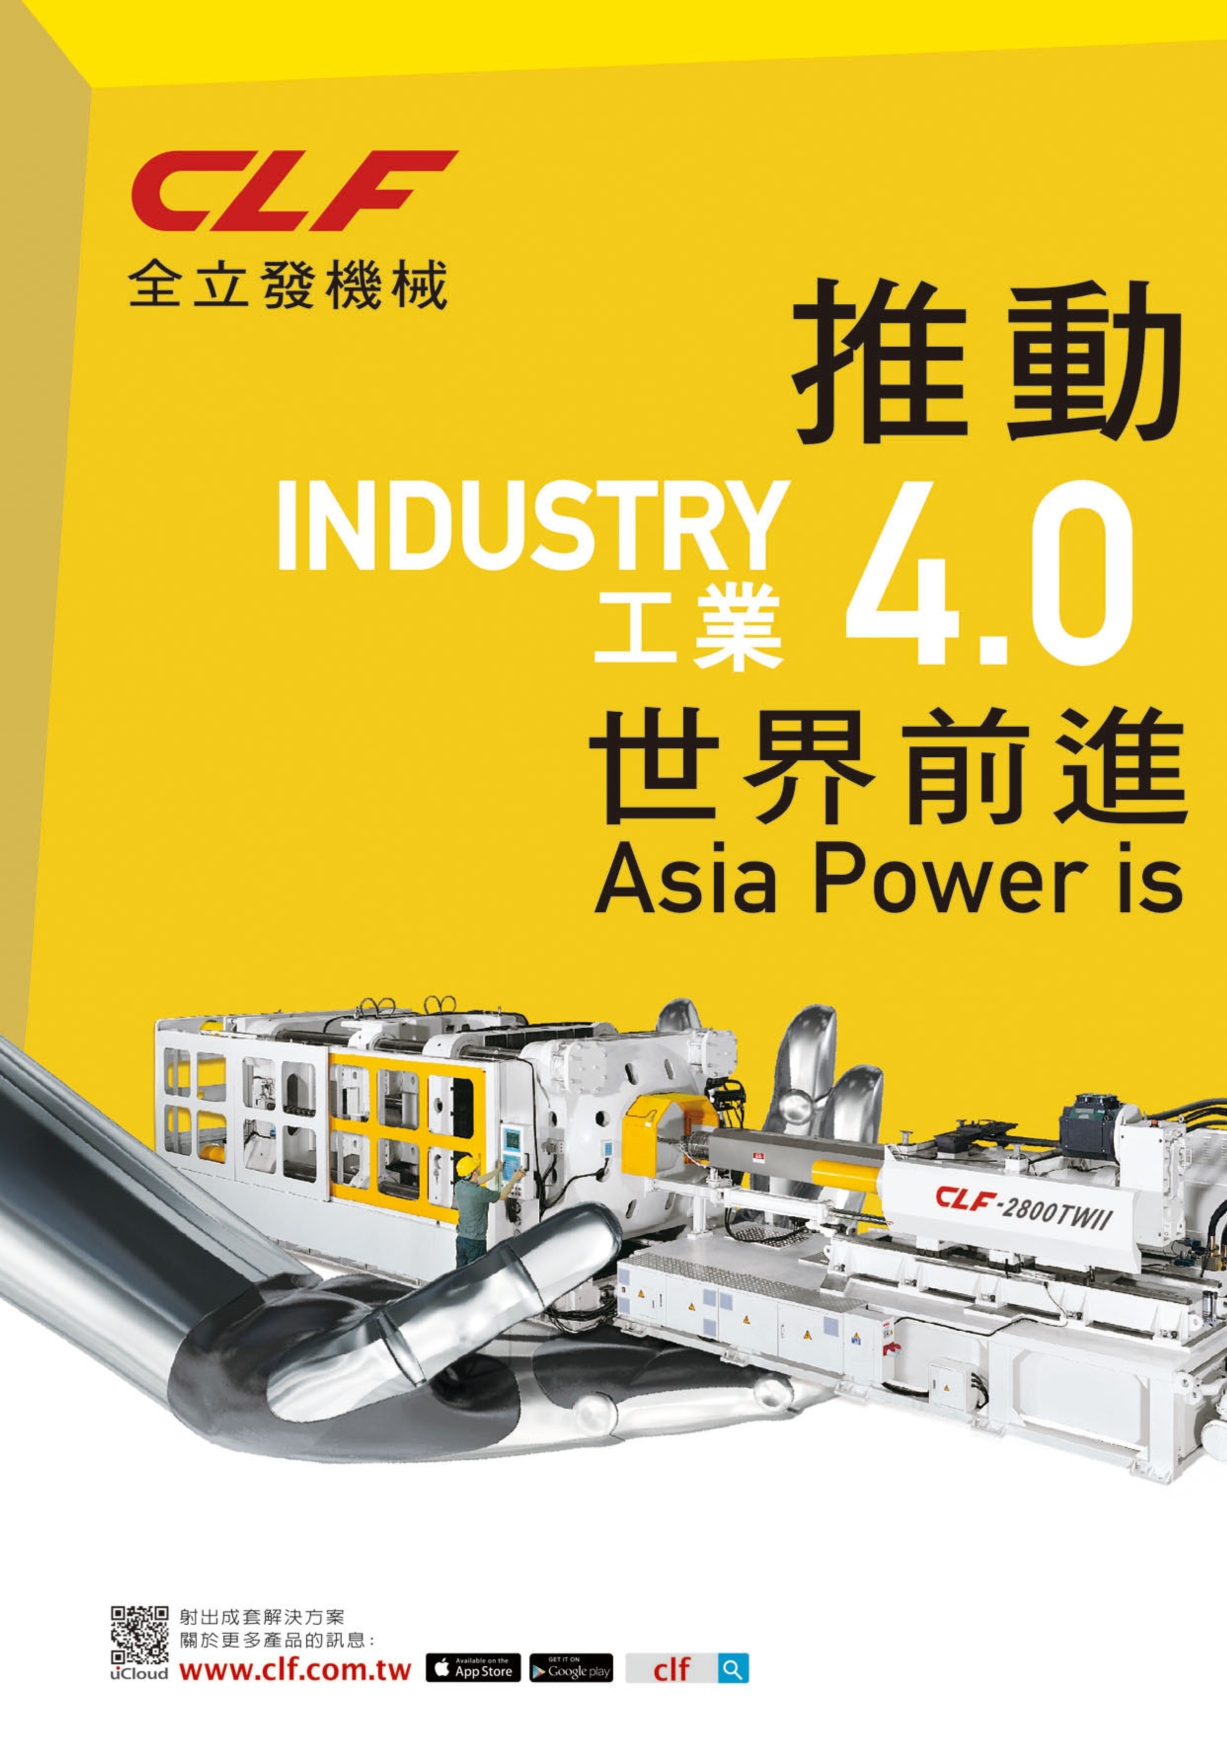 台湾机械制造厂商名录中文版 全立发机械厂股份有限公司